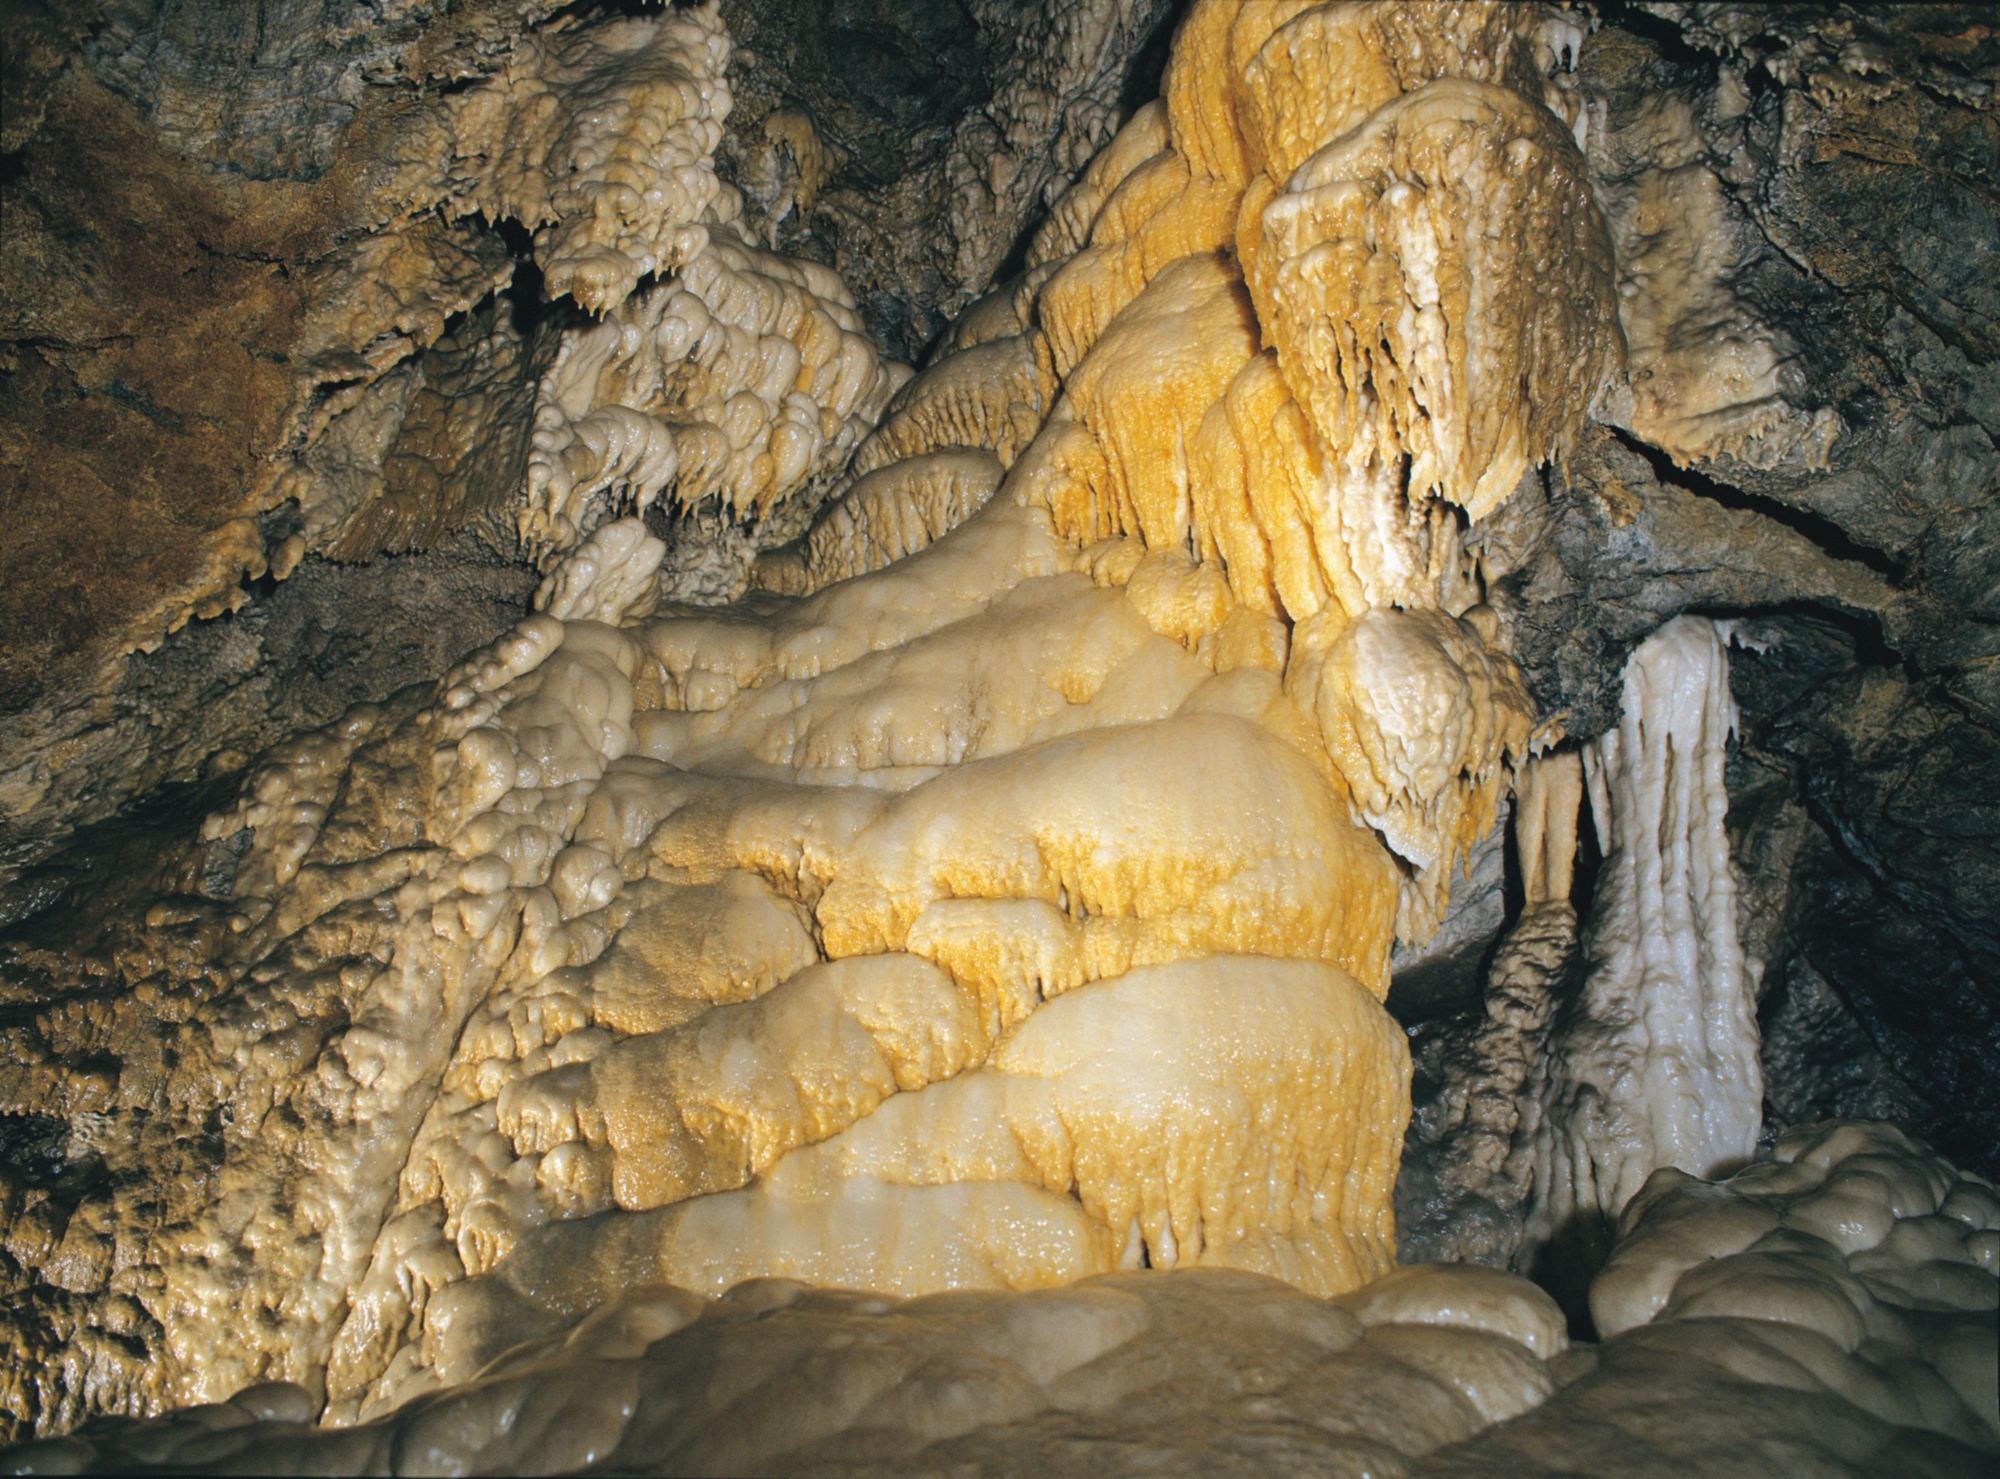 Grotta del Vento